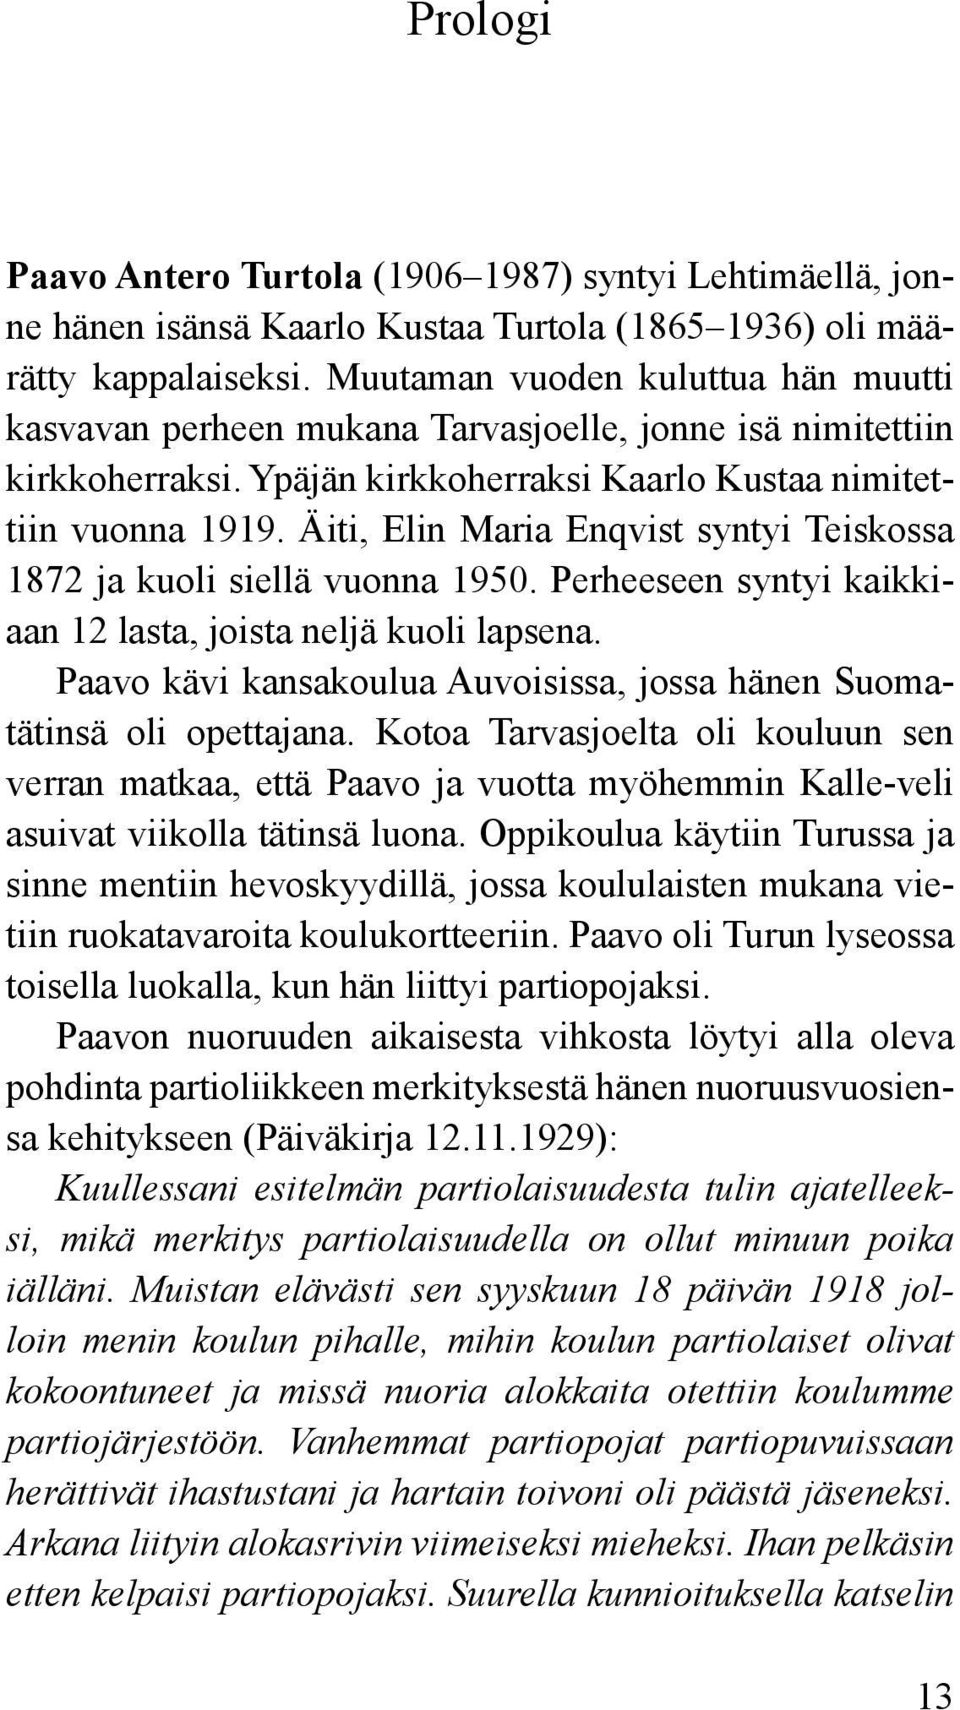 Äiti, Elin Maria Enqvist syntyi Teiskossa 1872 ja kuoli siellä vuonna 1950. Perheeseen syntyi kaikkiaan 12 lasta, joista neljä kuoli lapsena.